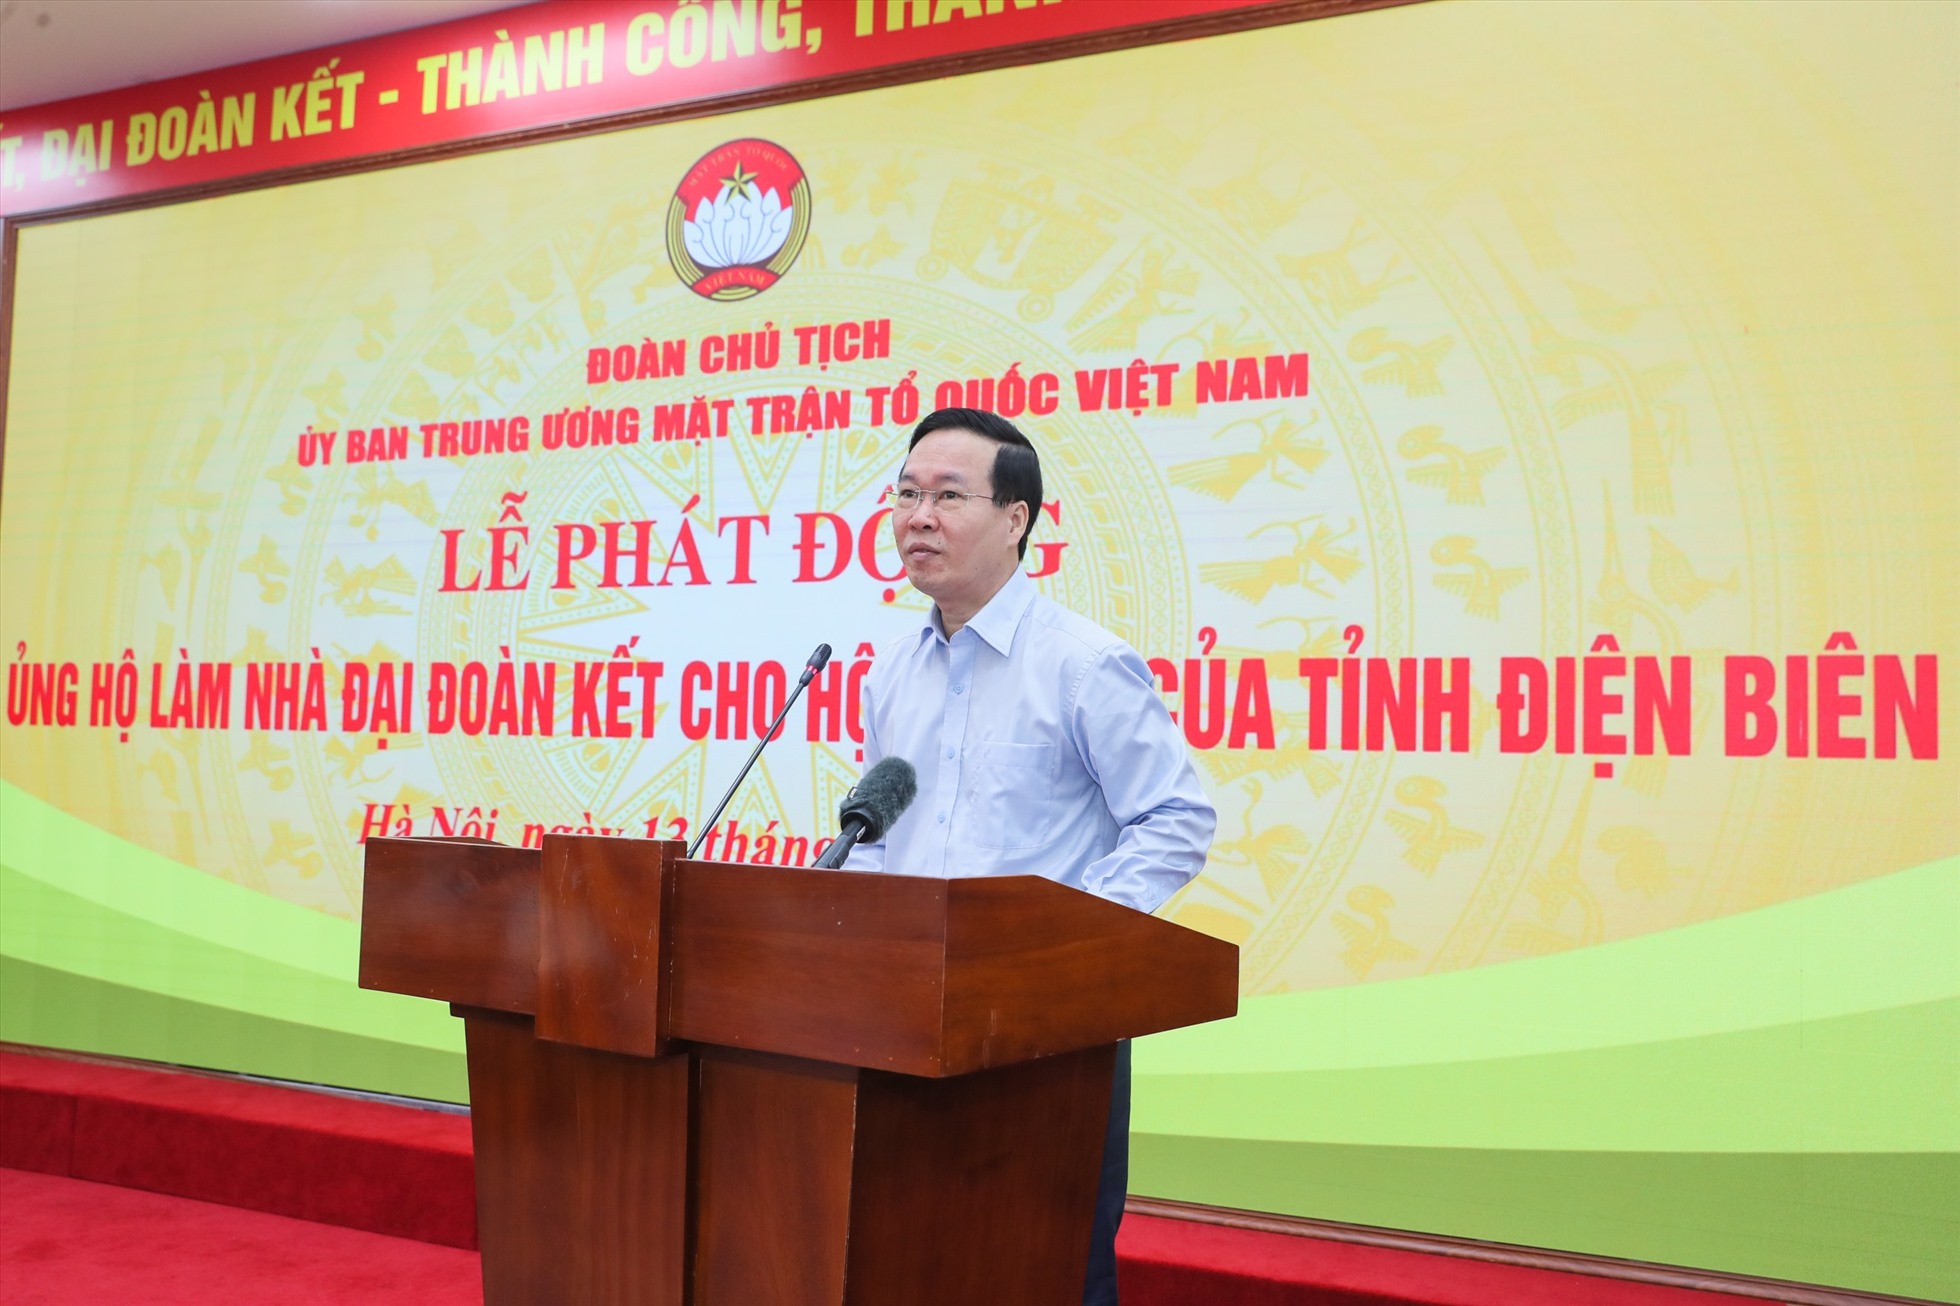 Chủ tịch nước Võ Văn Thưởng phát biểu tại Lễ phát động hỗ trợ làm nhà đại đoàn kết cho hộ nghèo tỉnh Điện Biên. Ảnh: Hải Nguyễn